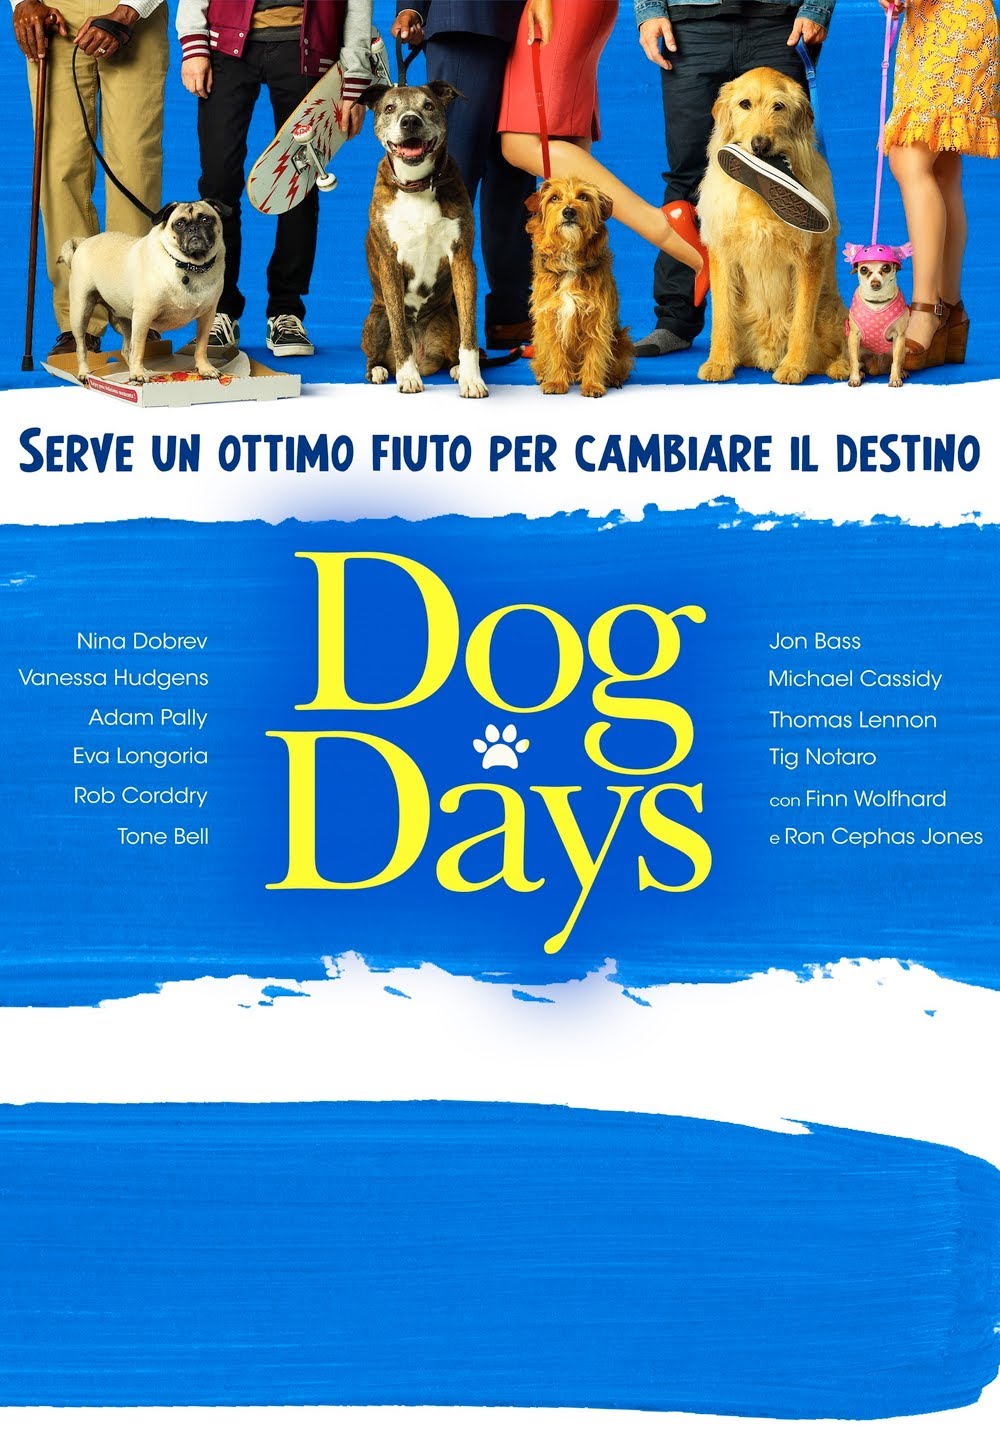 Dog Days [HD] (2018)